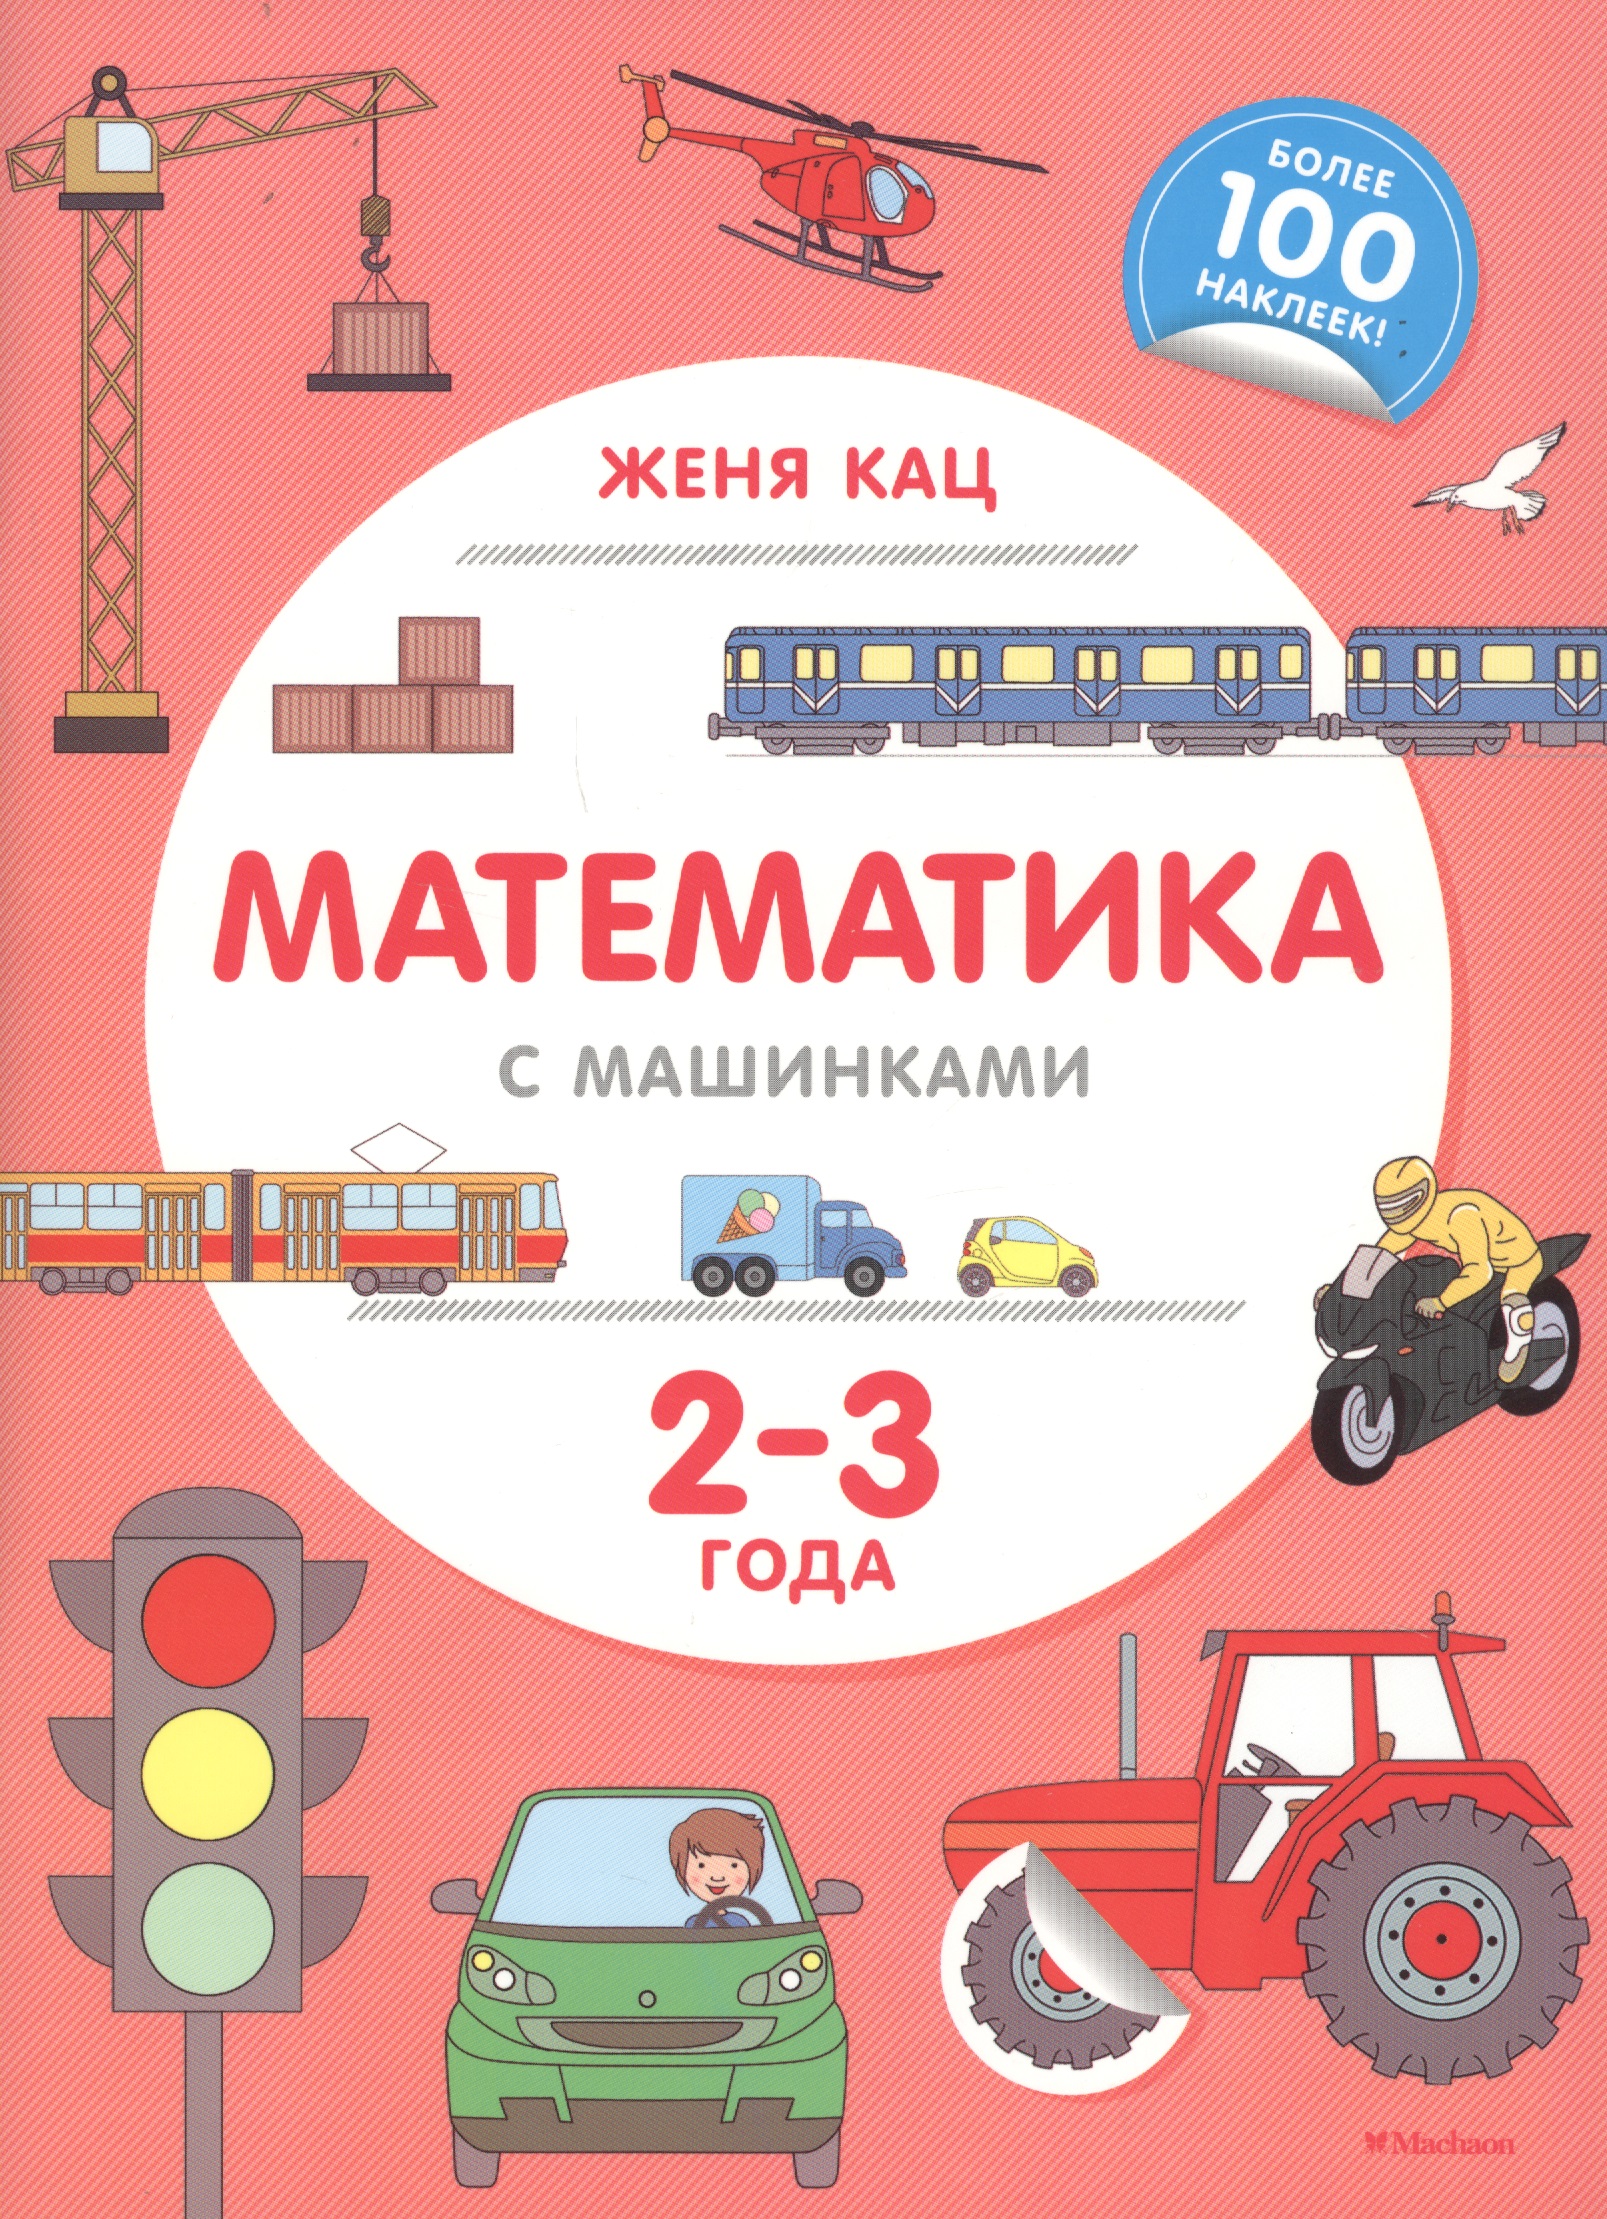 Кац Евгения Марковна Математика с машинками. 2-3 года кац женя игры для начинающих мам